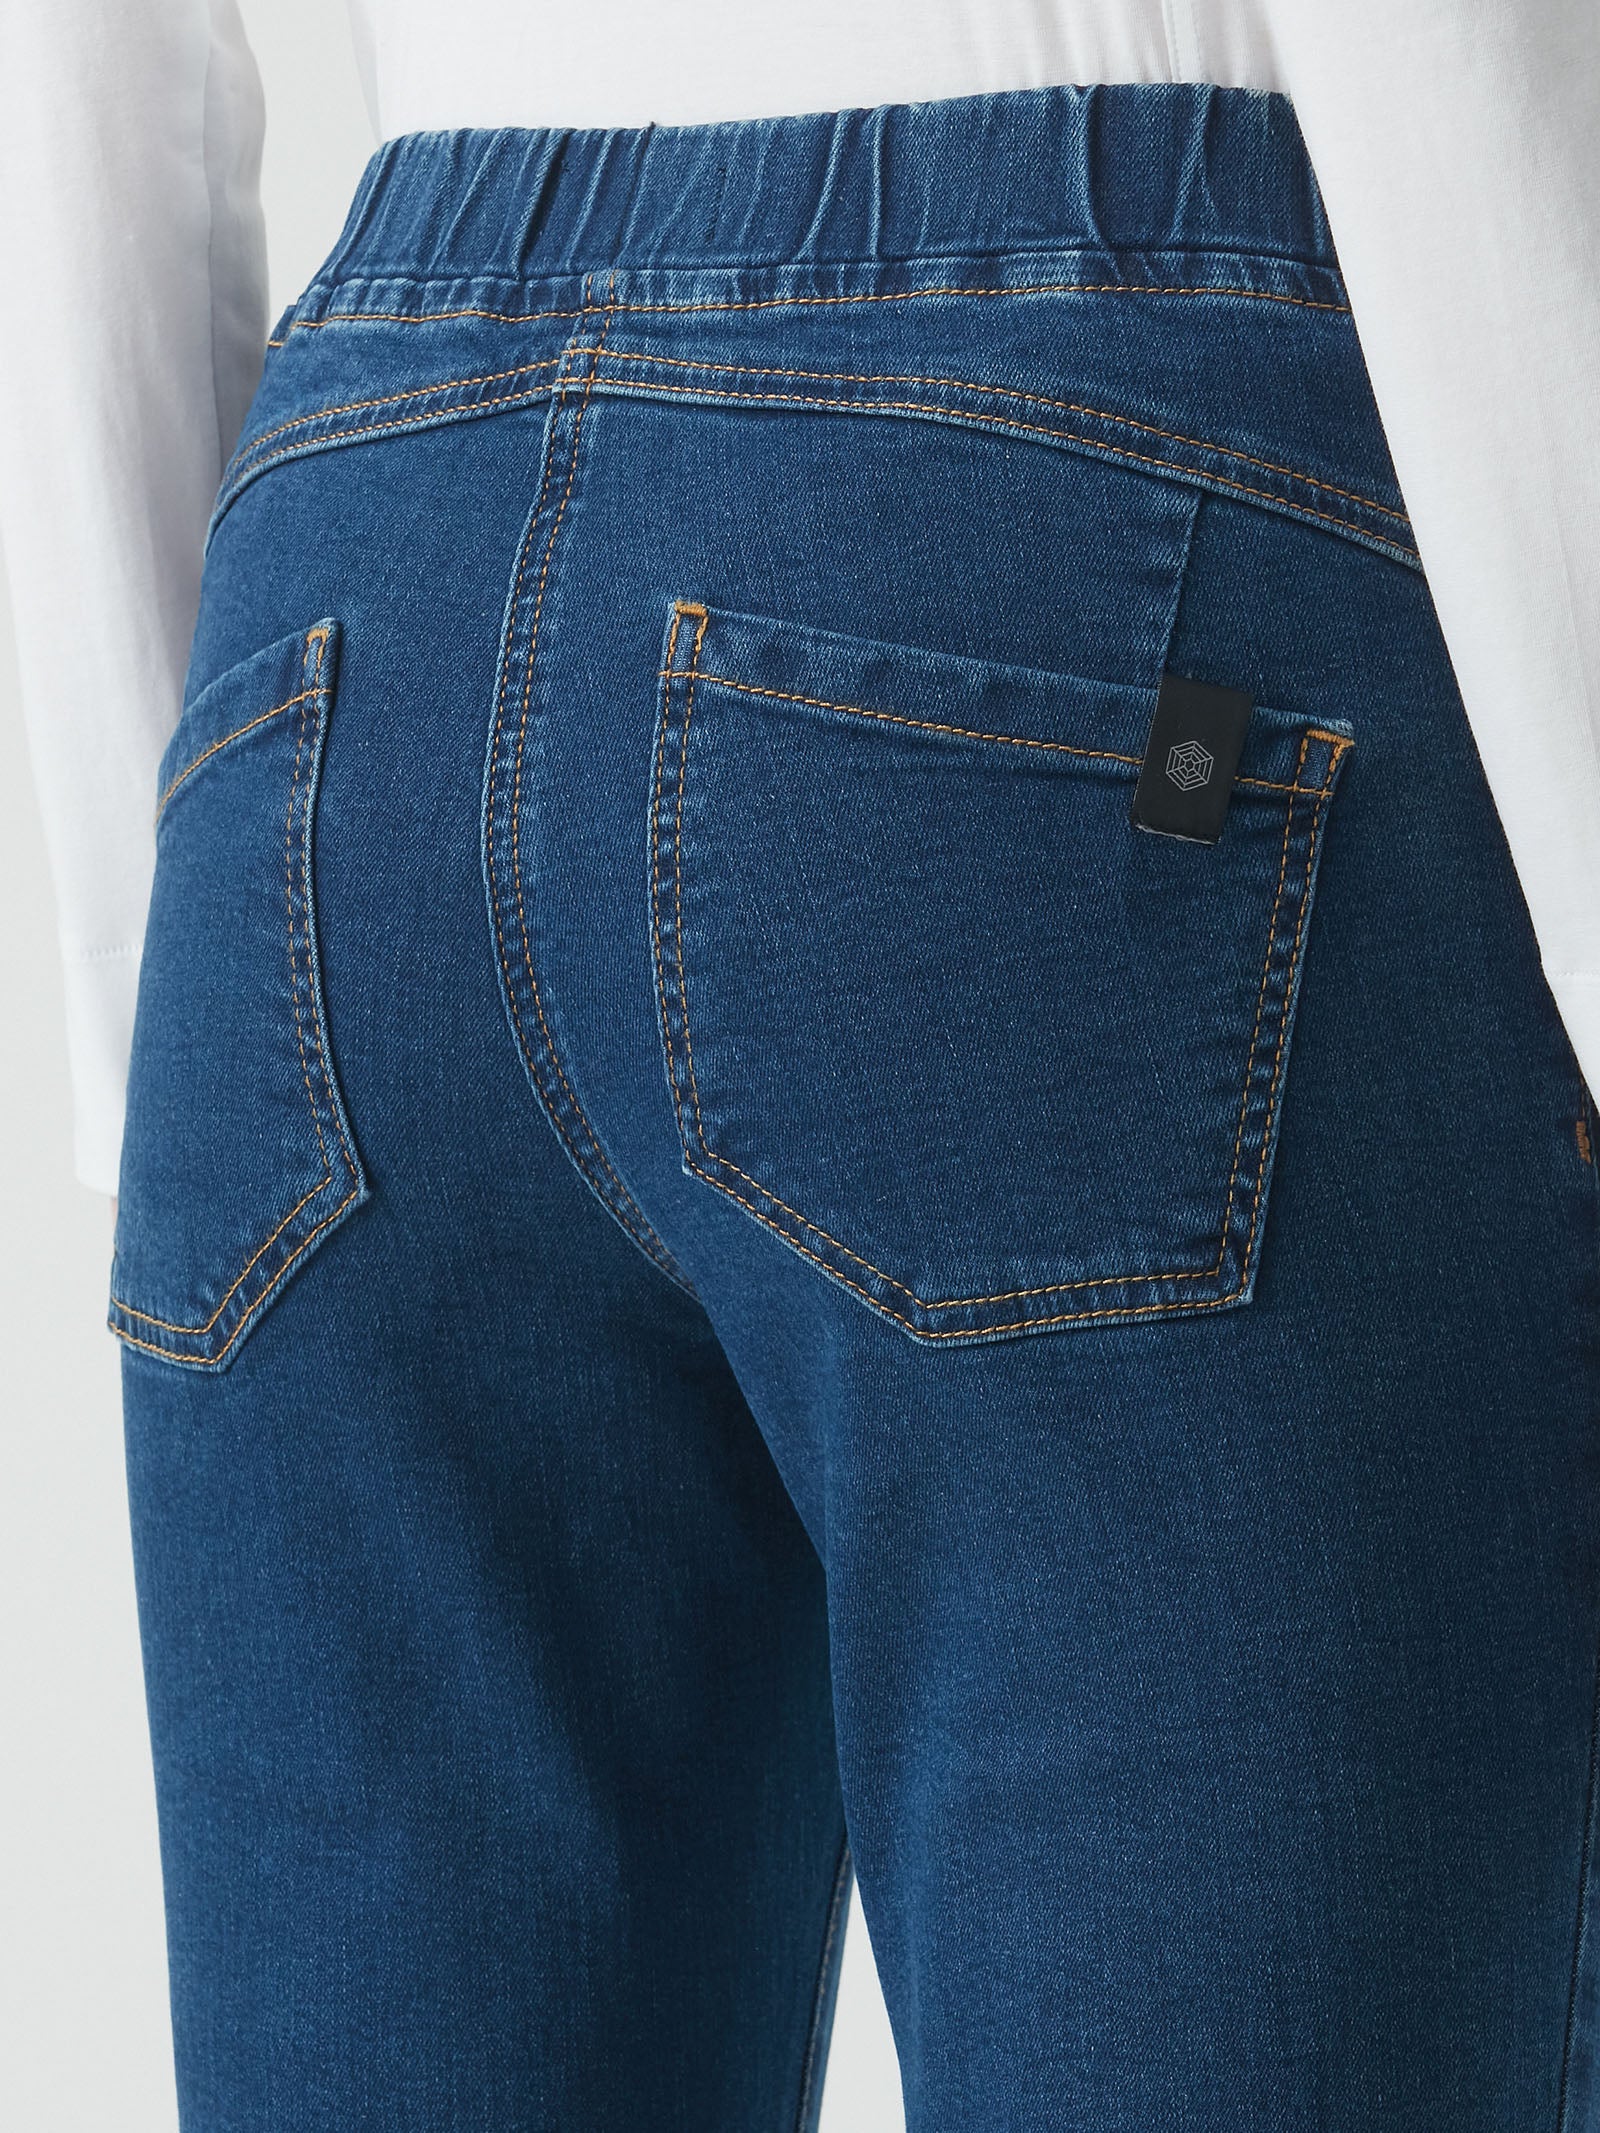 Jeans 5 tasche in Denim Eco Cotton - Ragno